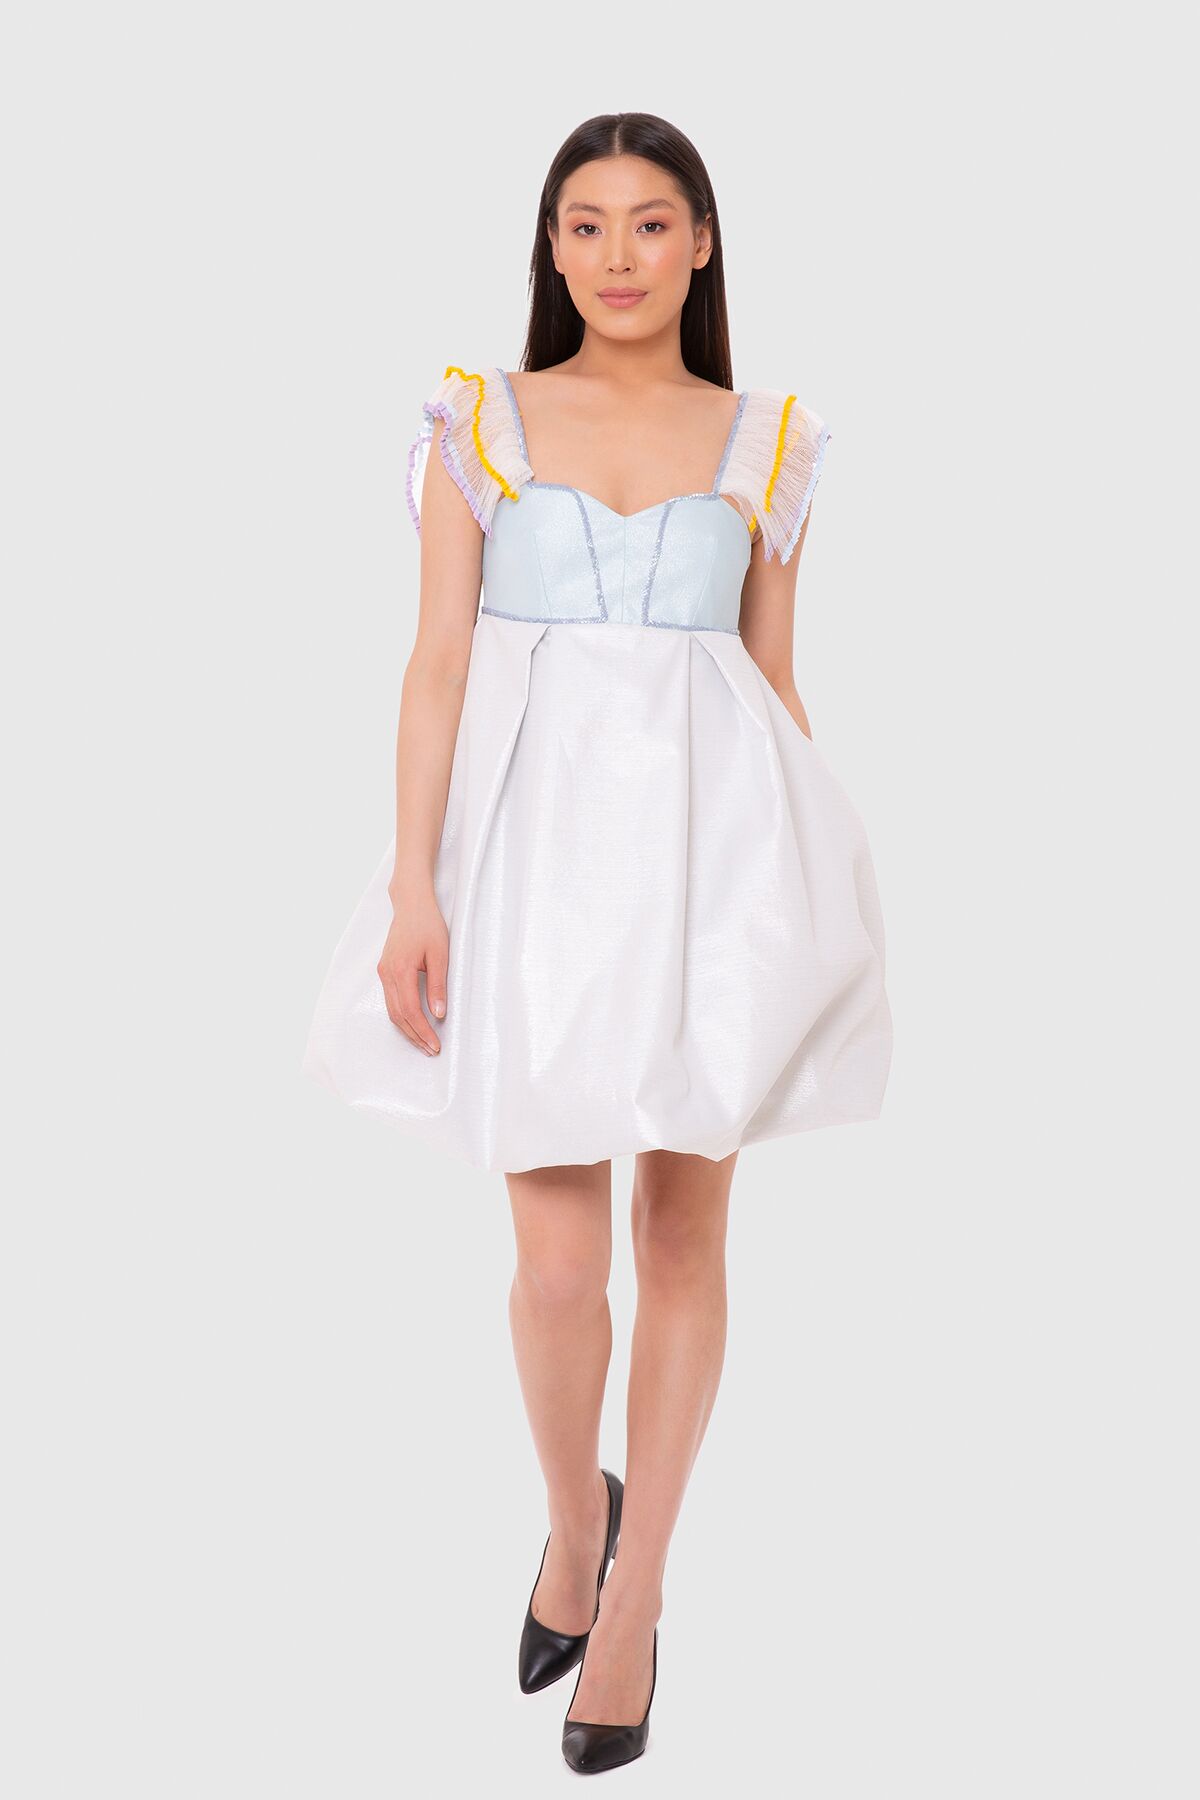 MANI MANI - Kolları Detaylı Balon Etek Elbise